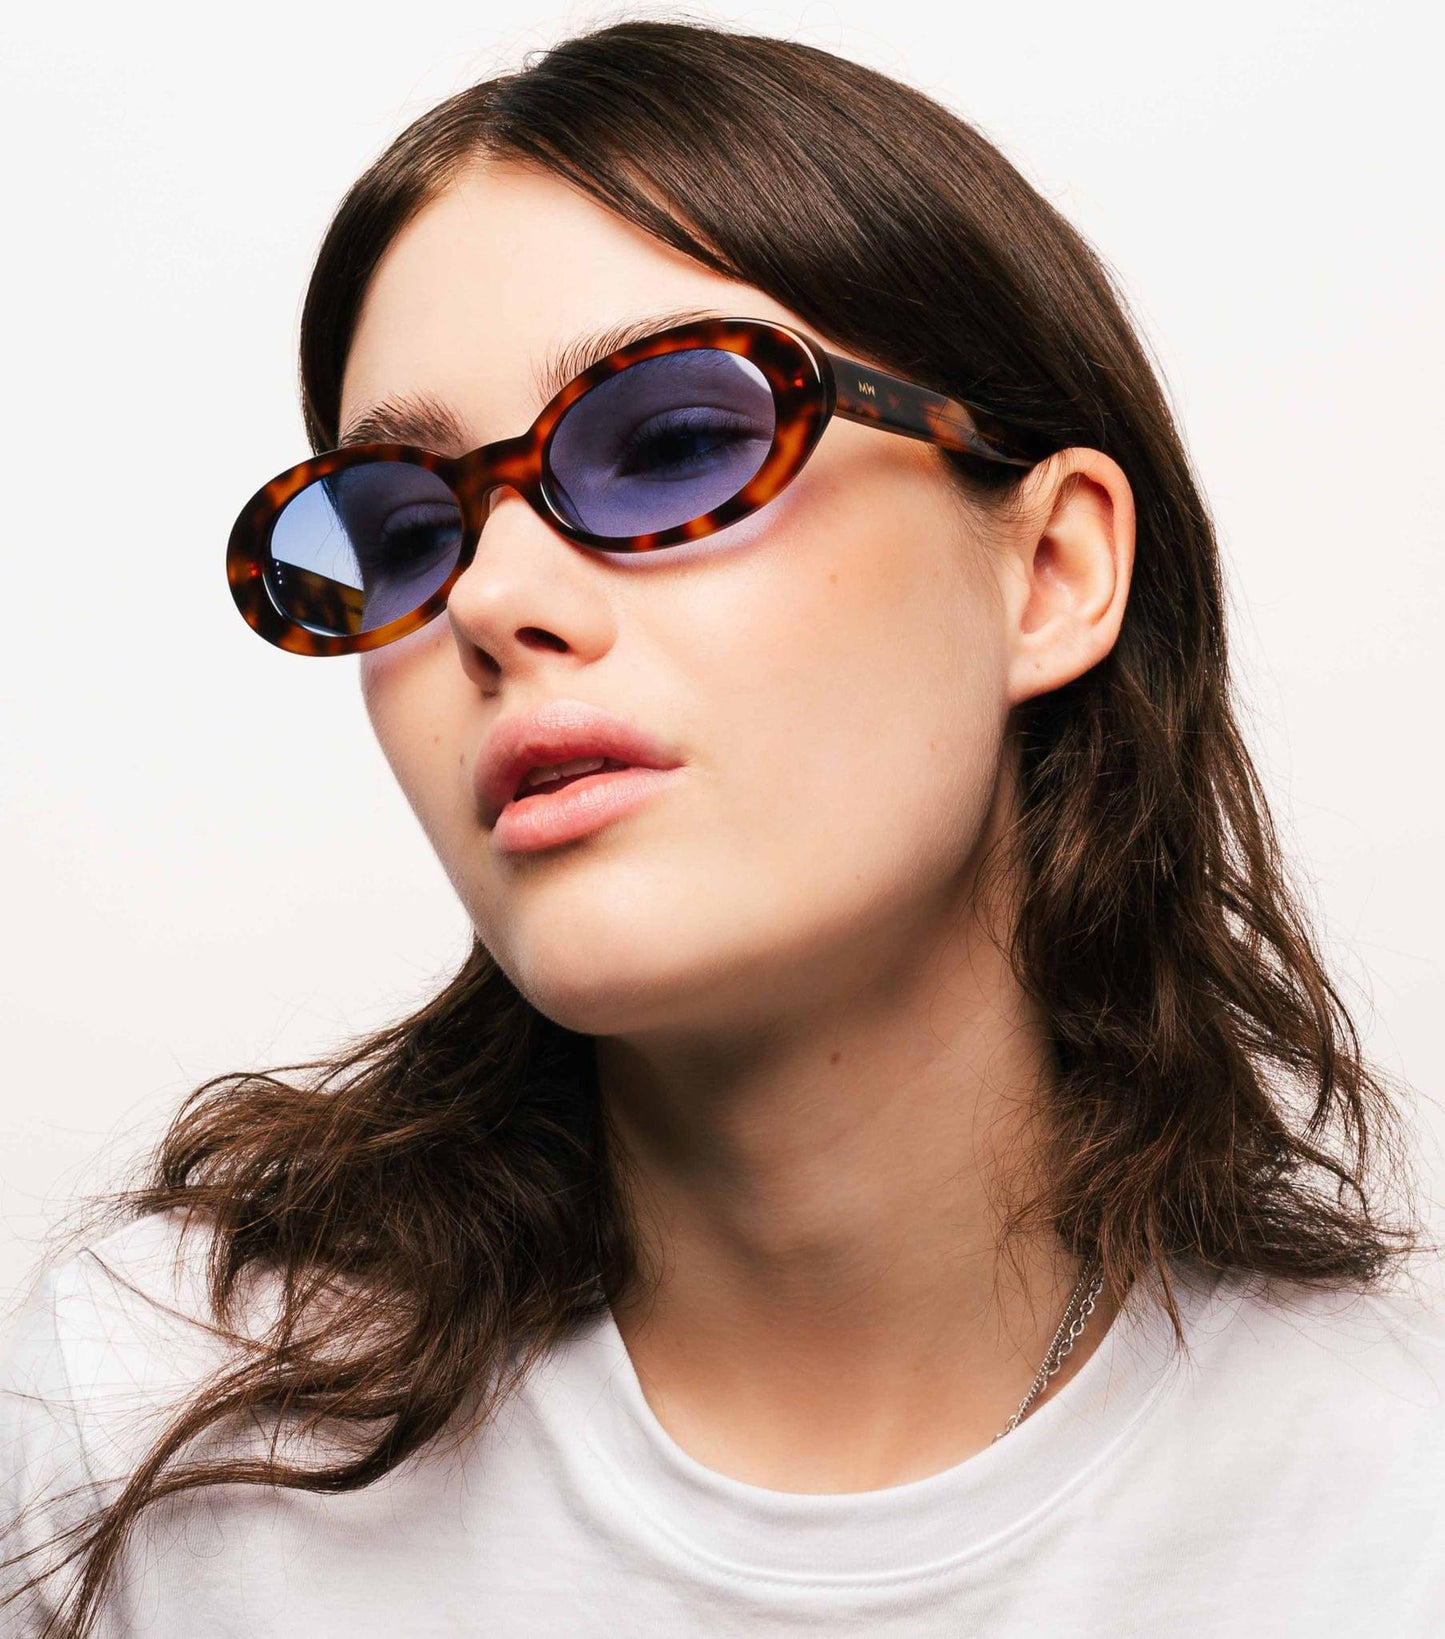 Kurt, oval sunglasses for men and women blue lens UV400 protection